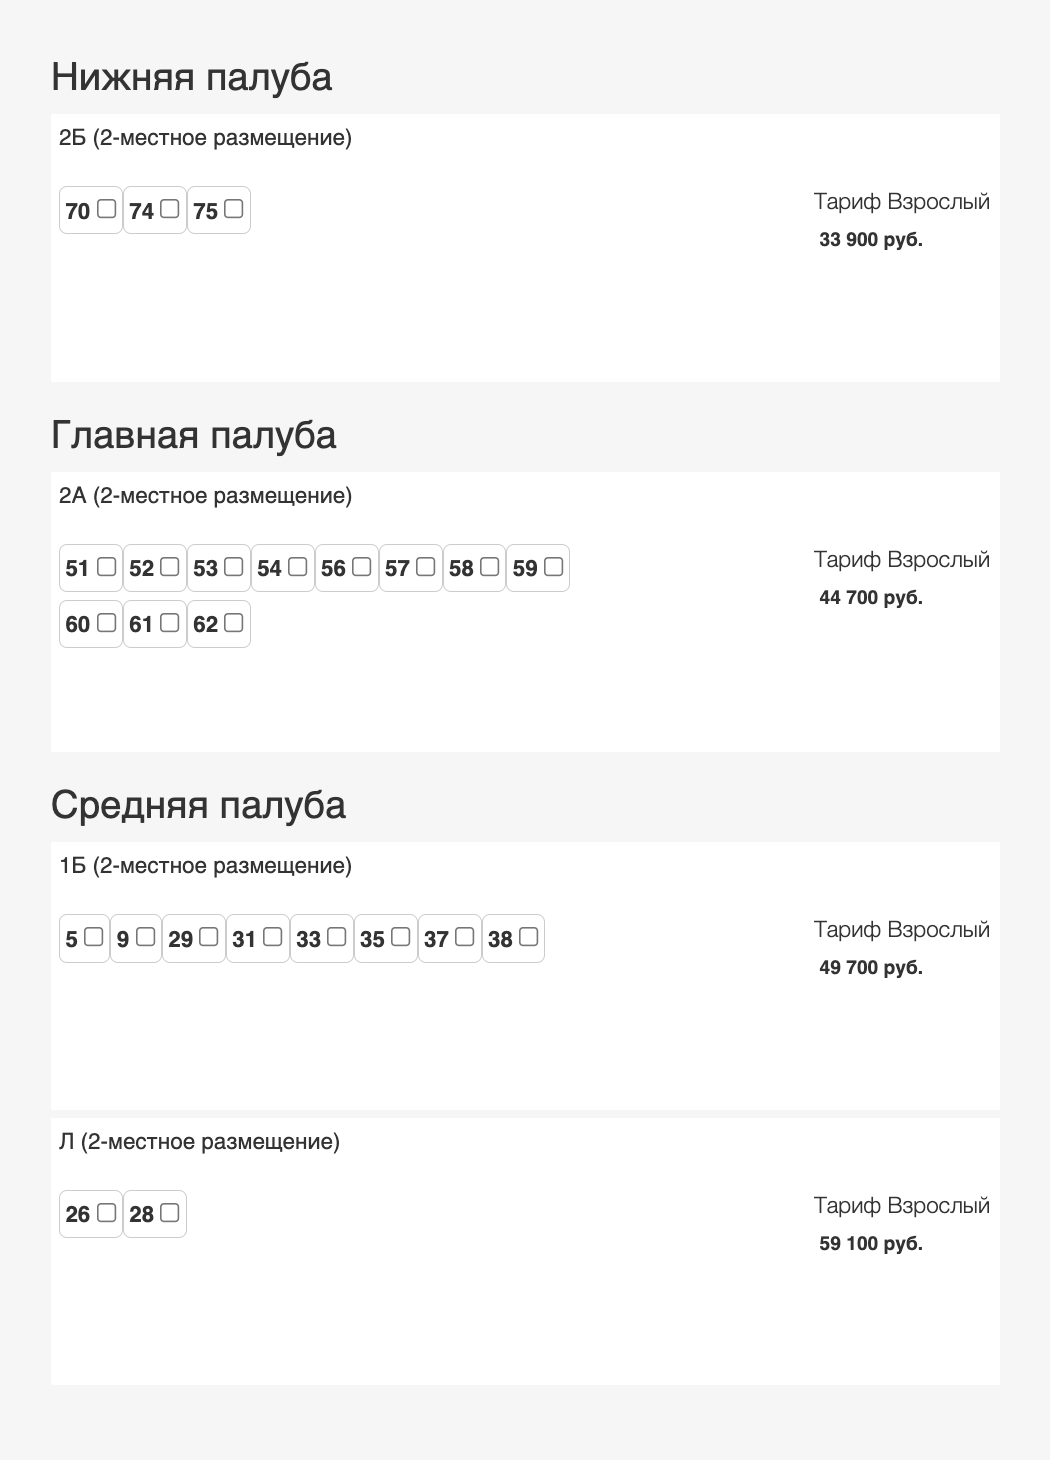 Таблица цен на круиз из Москвы в Константиново. Источник: «Речные путешествия»